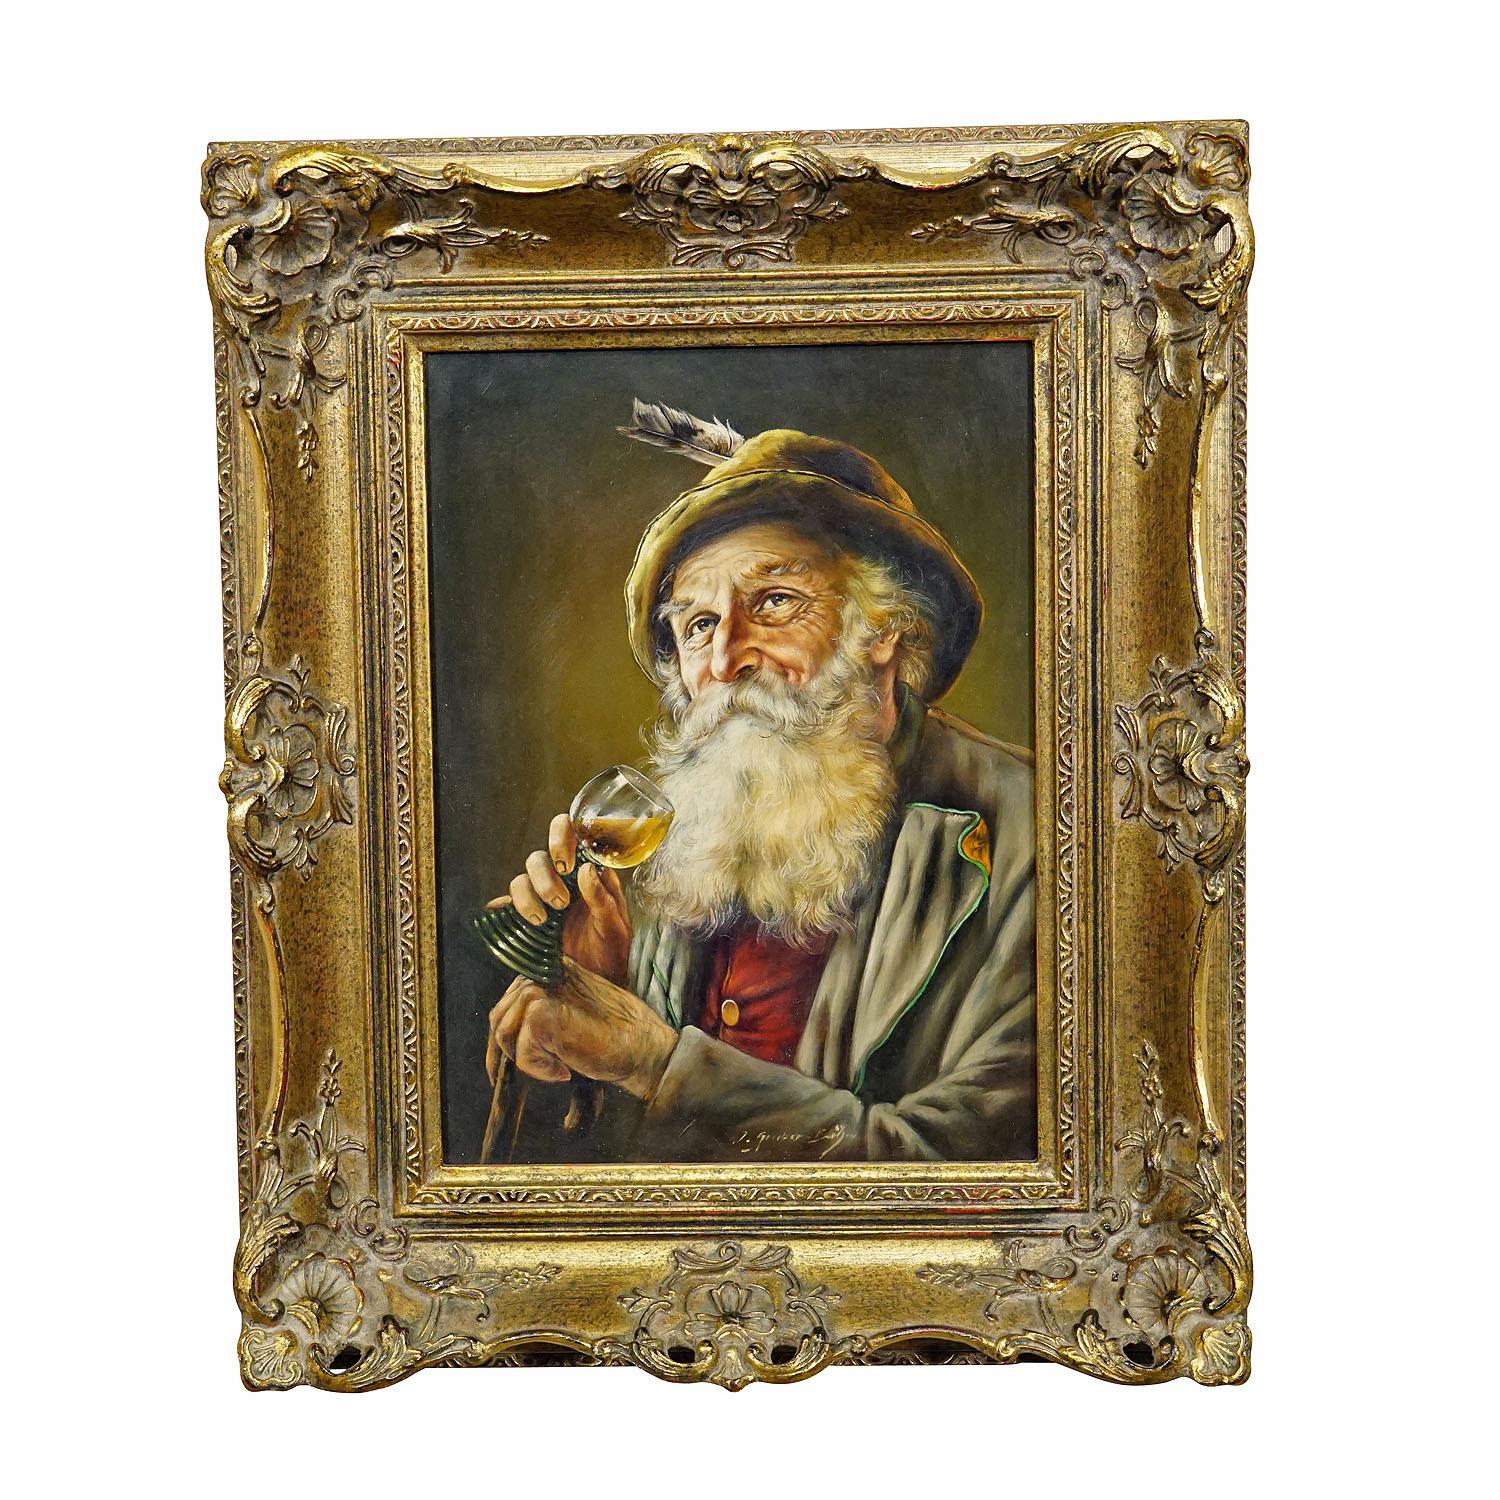 J. Gruber – Porträt eines bayerischen Volksmannes mit Weinglas, Öl auf Holz

Ein farbenfrohes Ölgemälde, das einen weintrinkenden, volkstümlichen bayerischen Mann in seinem Sonntagsgewand darstellt. Gemalt auf Holz mit Pastellfarben um 1950. Gerahmt